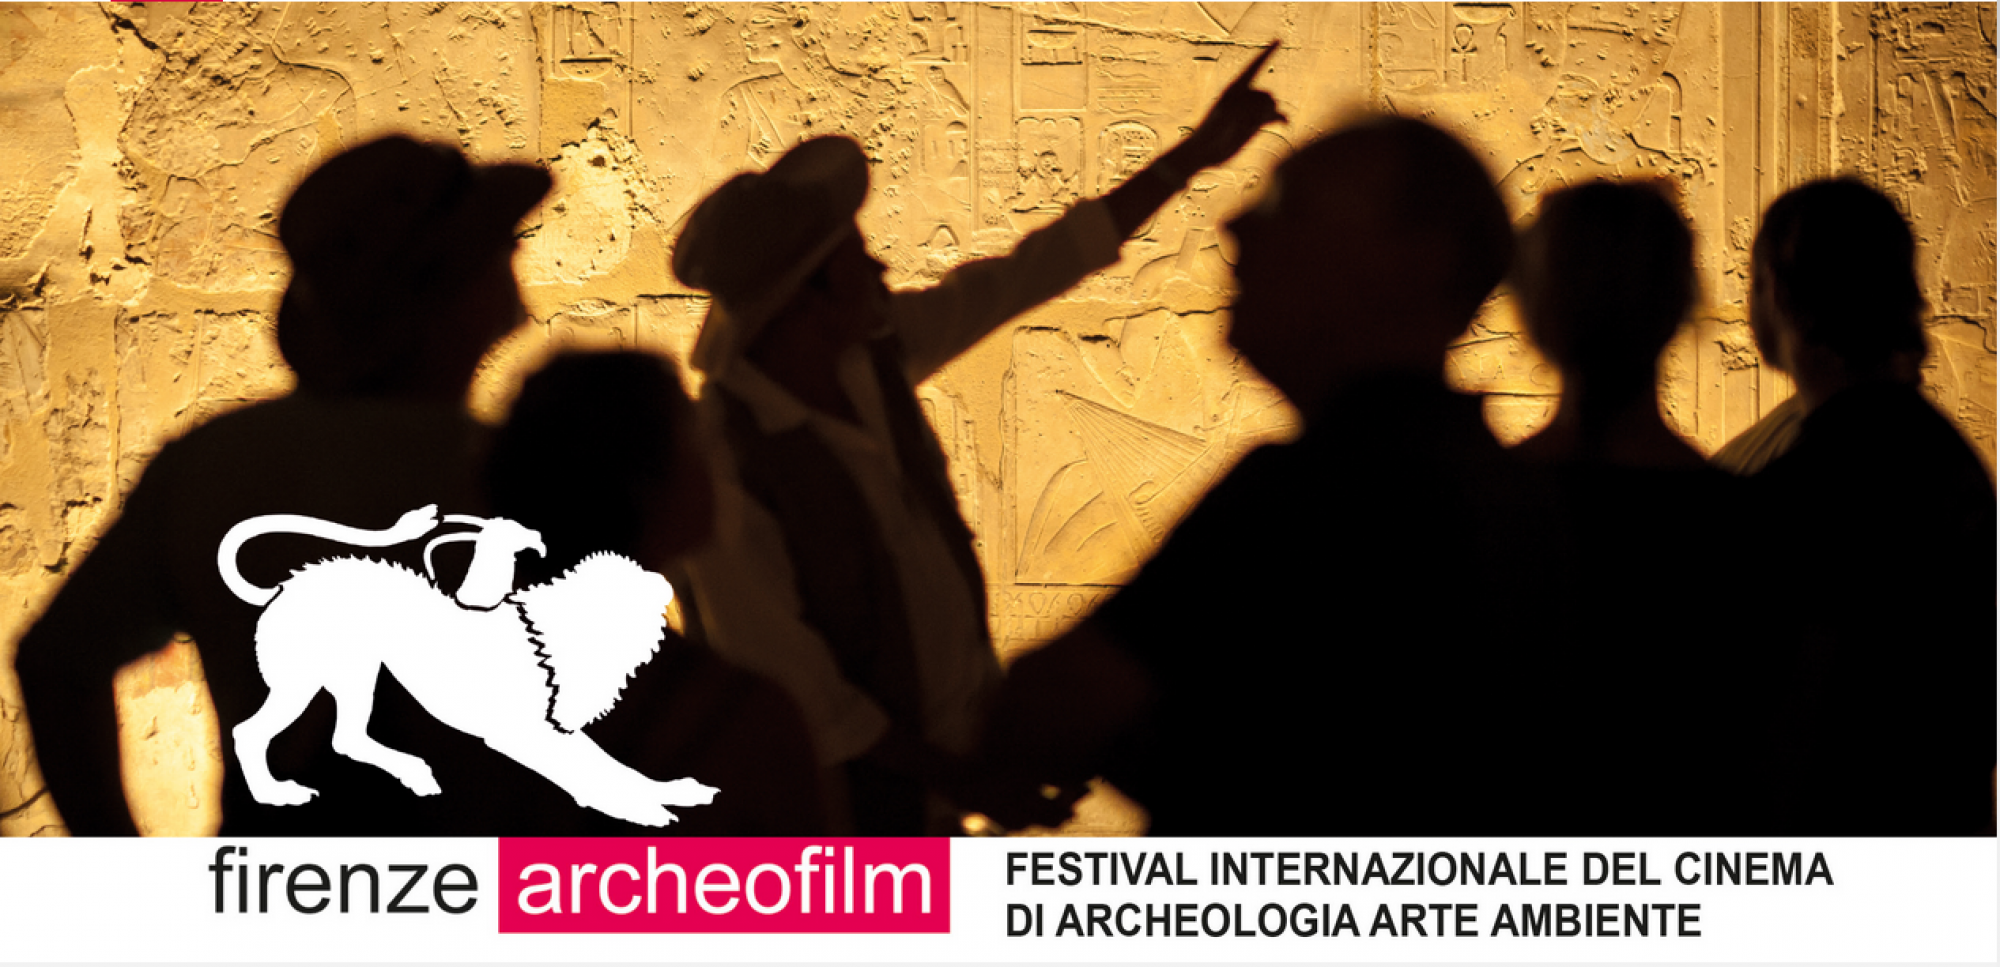 FIRENZE ARCHEOFILM 2022 Festival Internazionale del Cinema di Archeologia Arte Ambiente